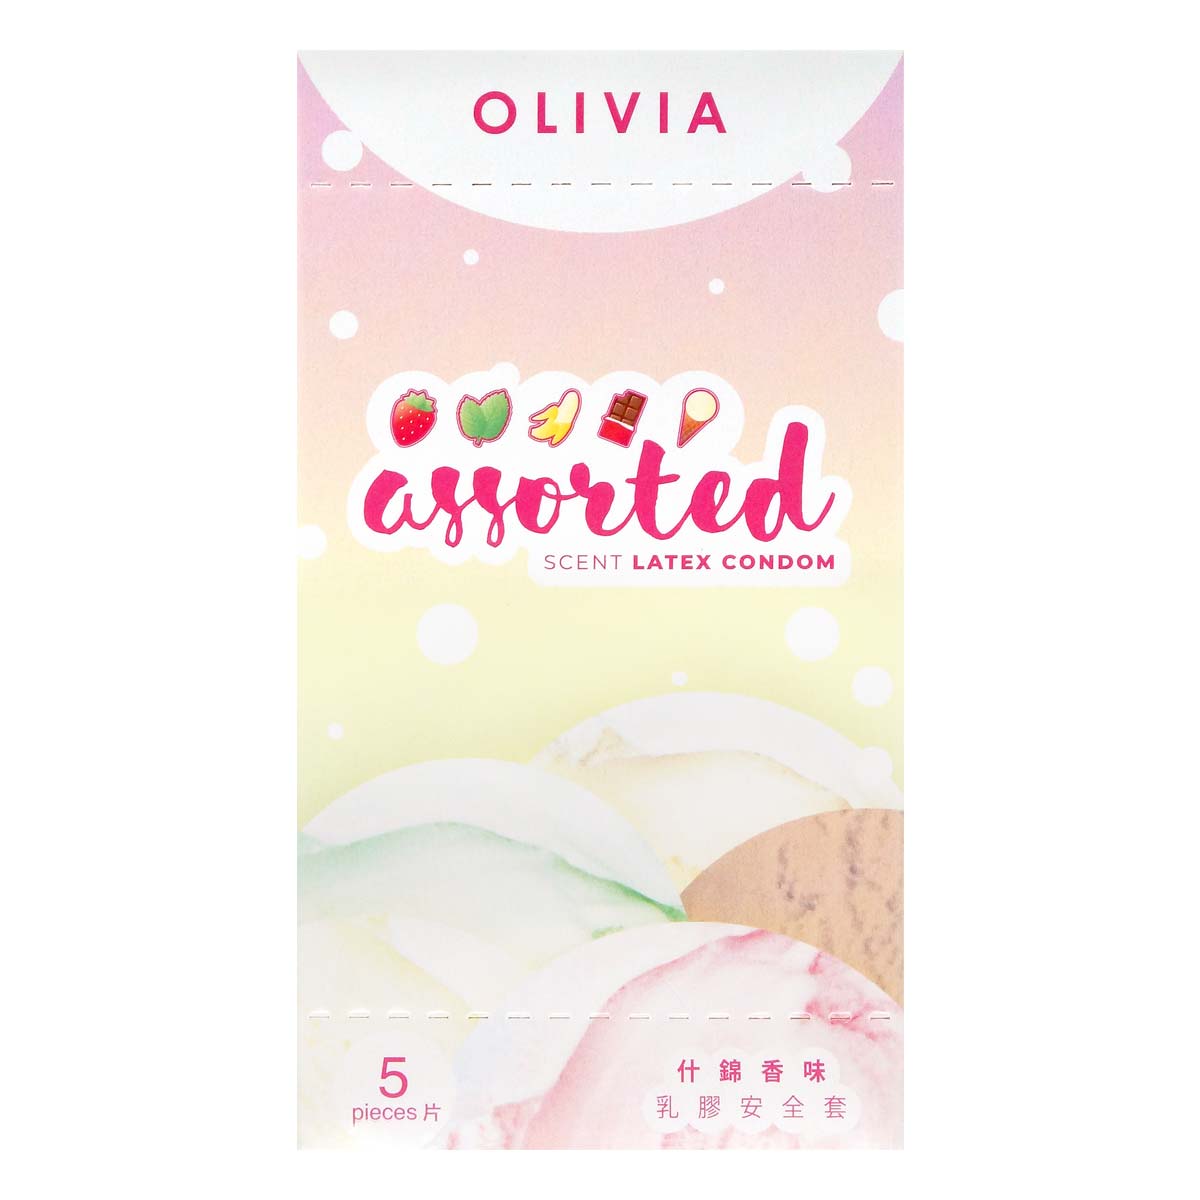 Olivia Assorted Scent Oral Condom 5's Pack Latex Condom ()-p_2